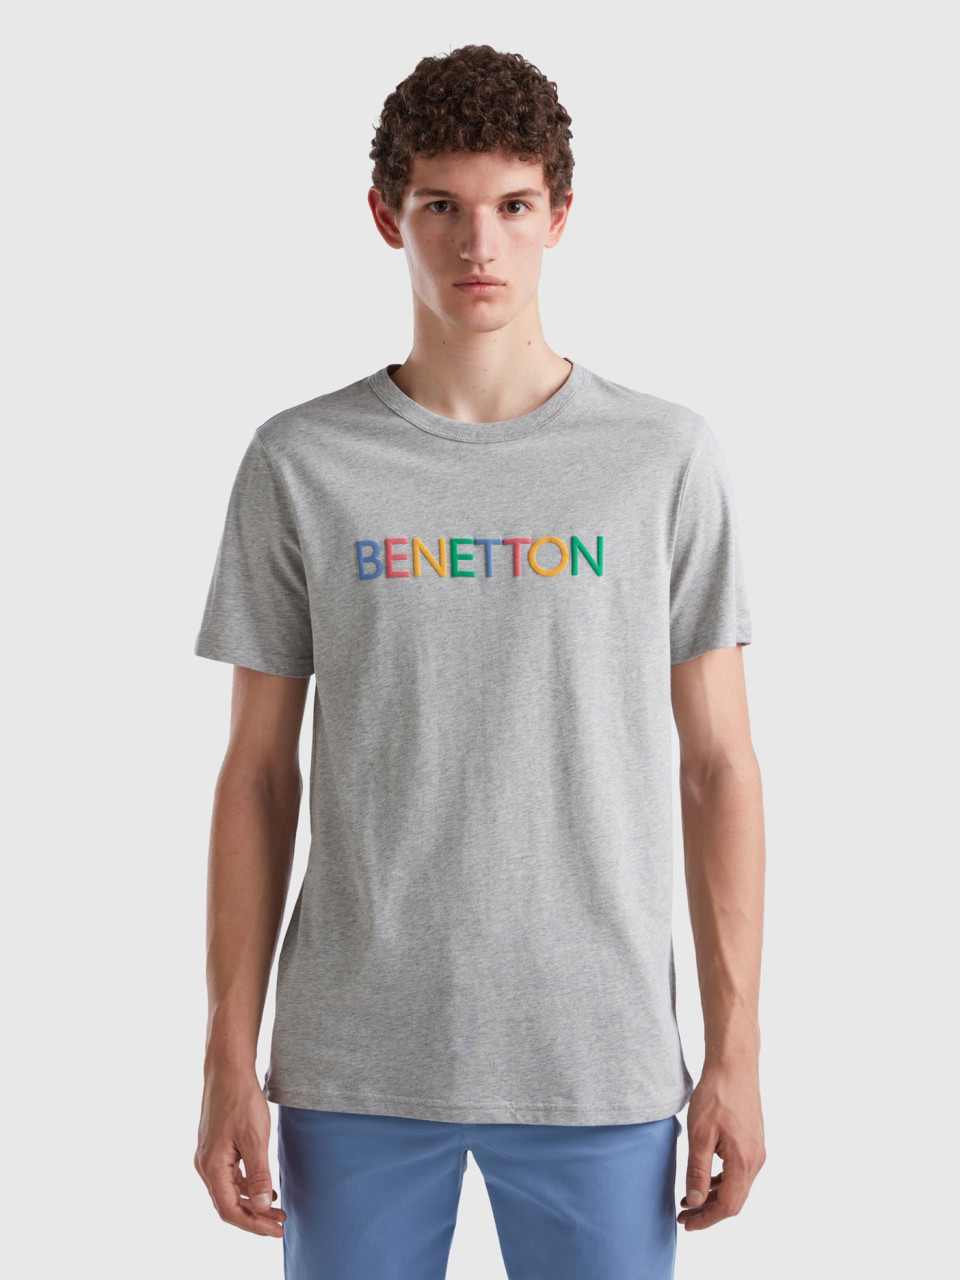 Benetton, T-shirt Grigia In Cotone Bio Con Logo Multicolor, Grigio Chiaro, Uomo